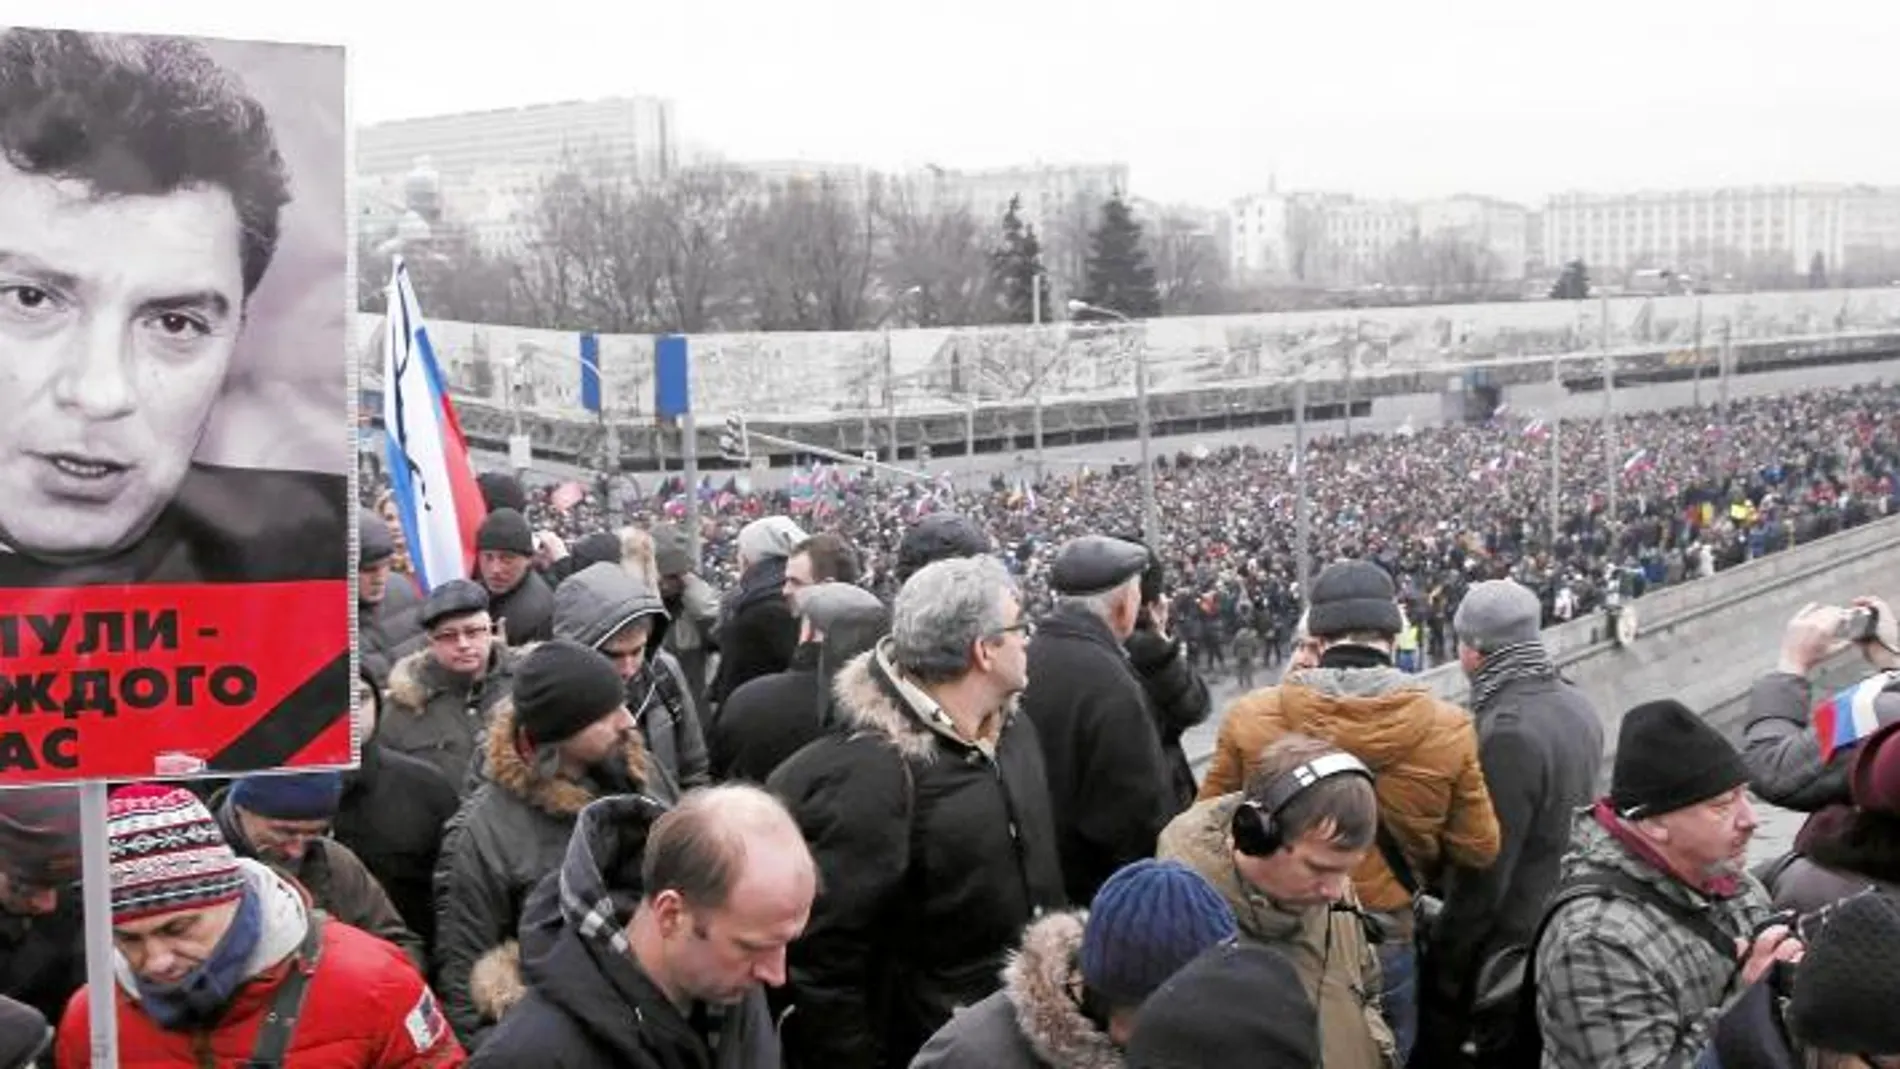 Manifestantes marchan en silencio hasta el puente donde fue asesinado Boris Nemtsov, una de las voces más críticas de Vladimir Putin, en 2015